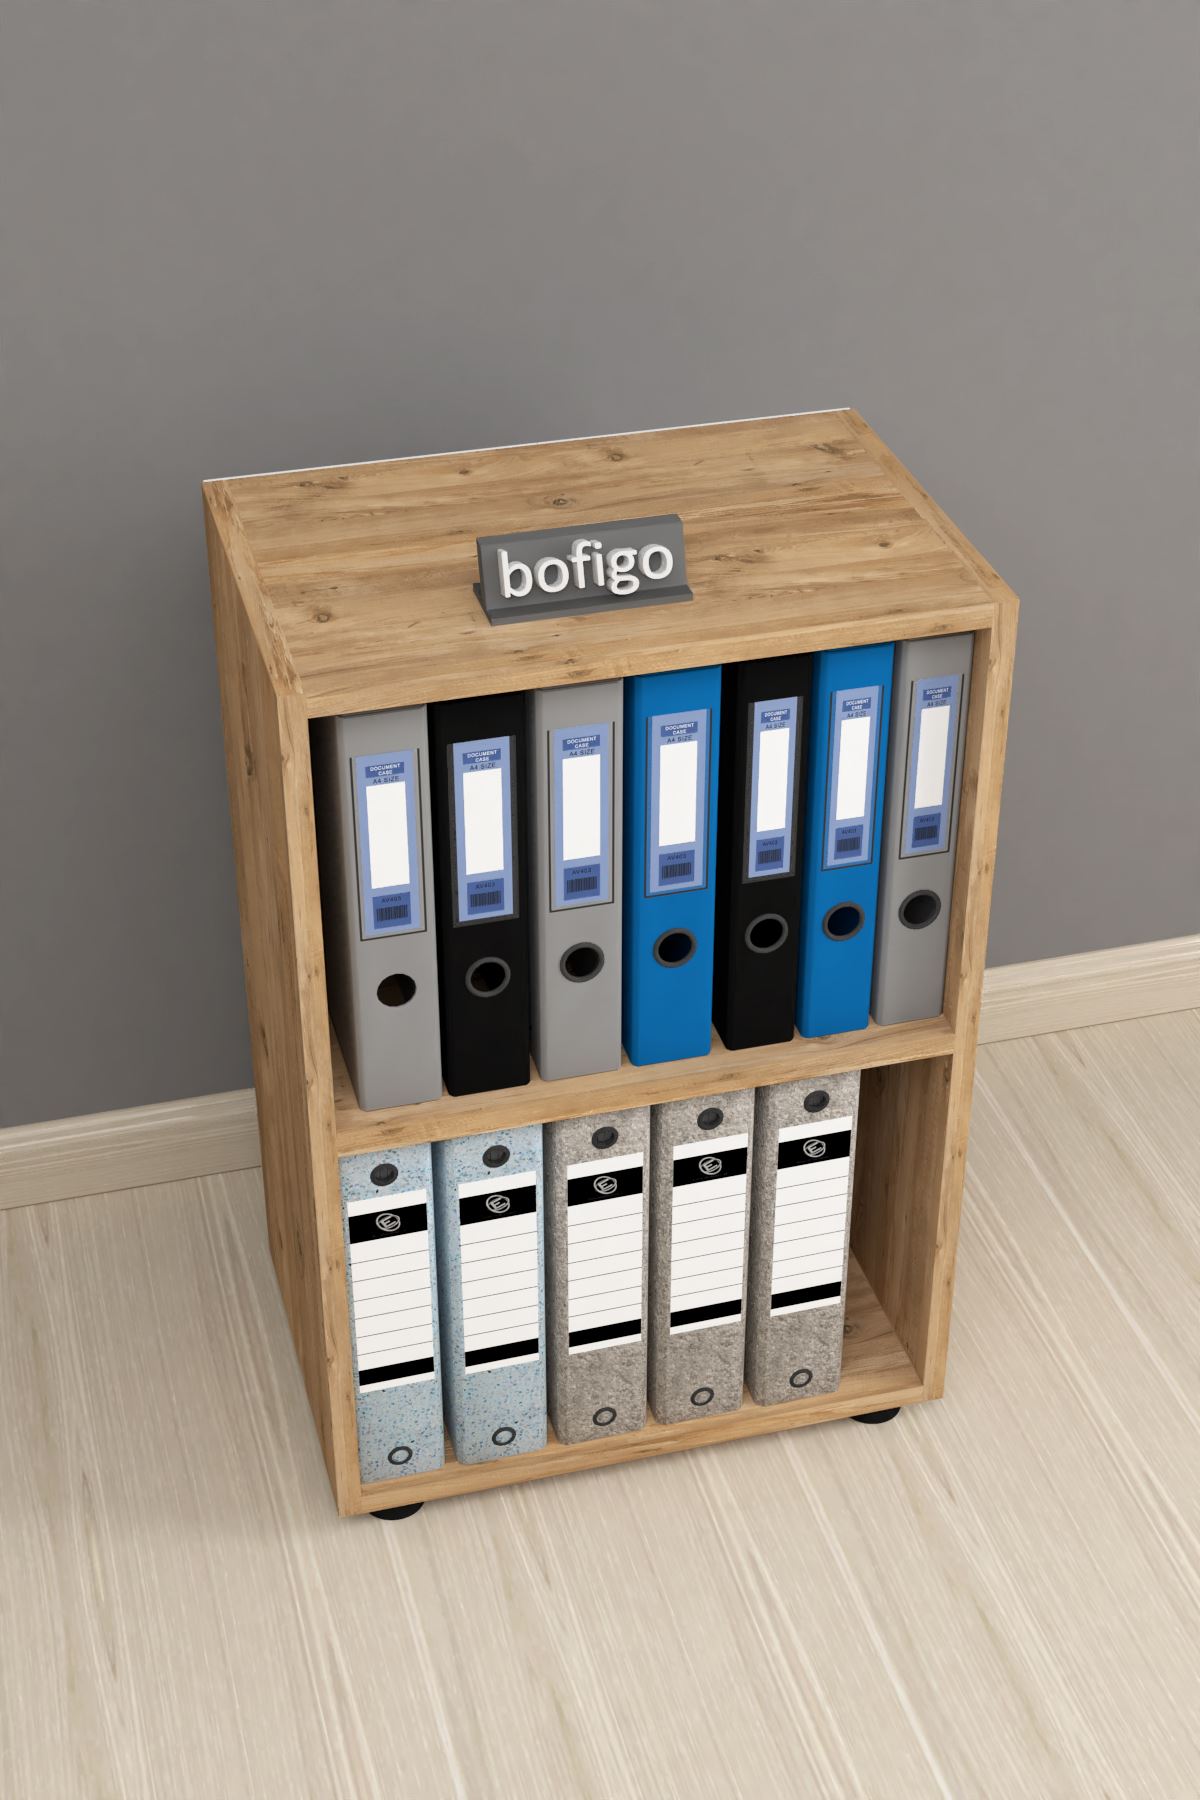 Bofigo 2 Raflı Kitaplık Ofis Dolabı Klasörlük Çok Amaçlı Dolap Mutfak Dolabı Çam